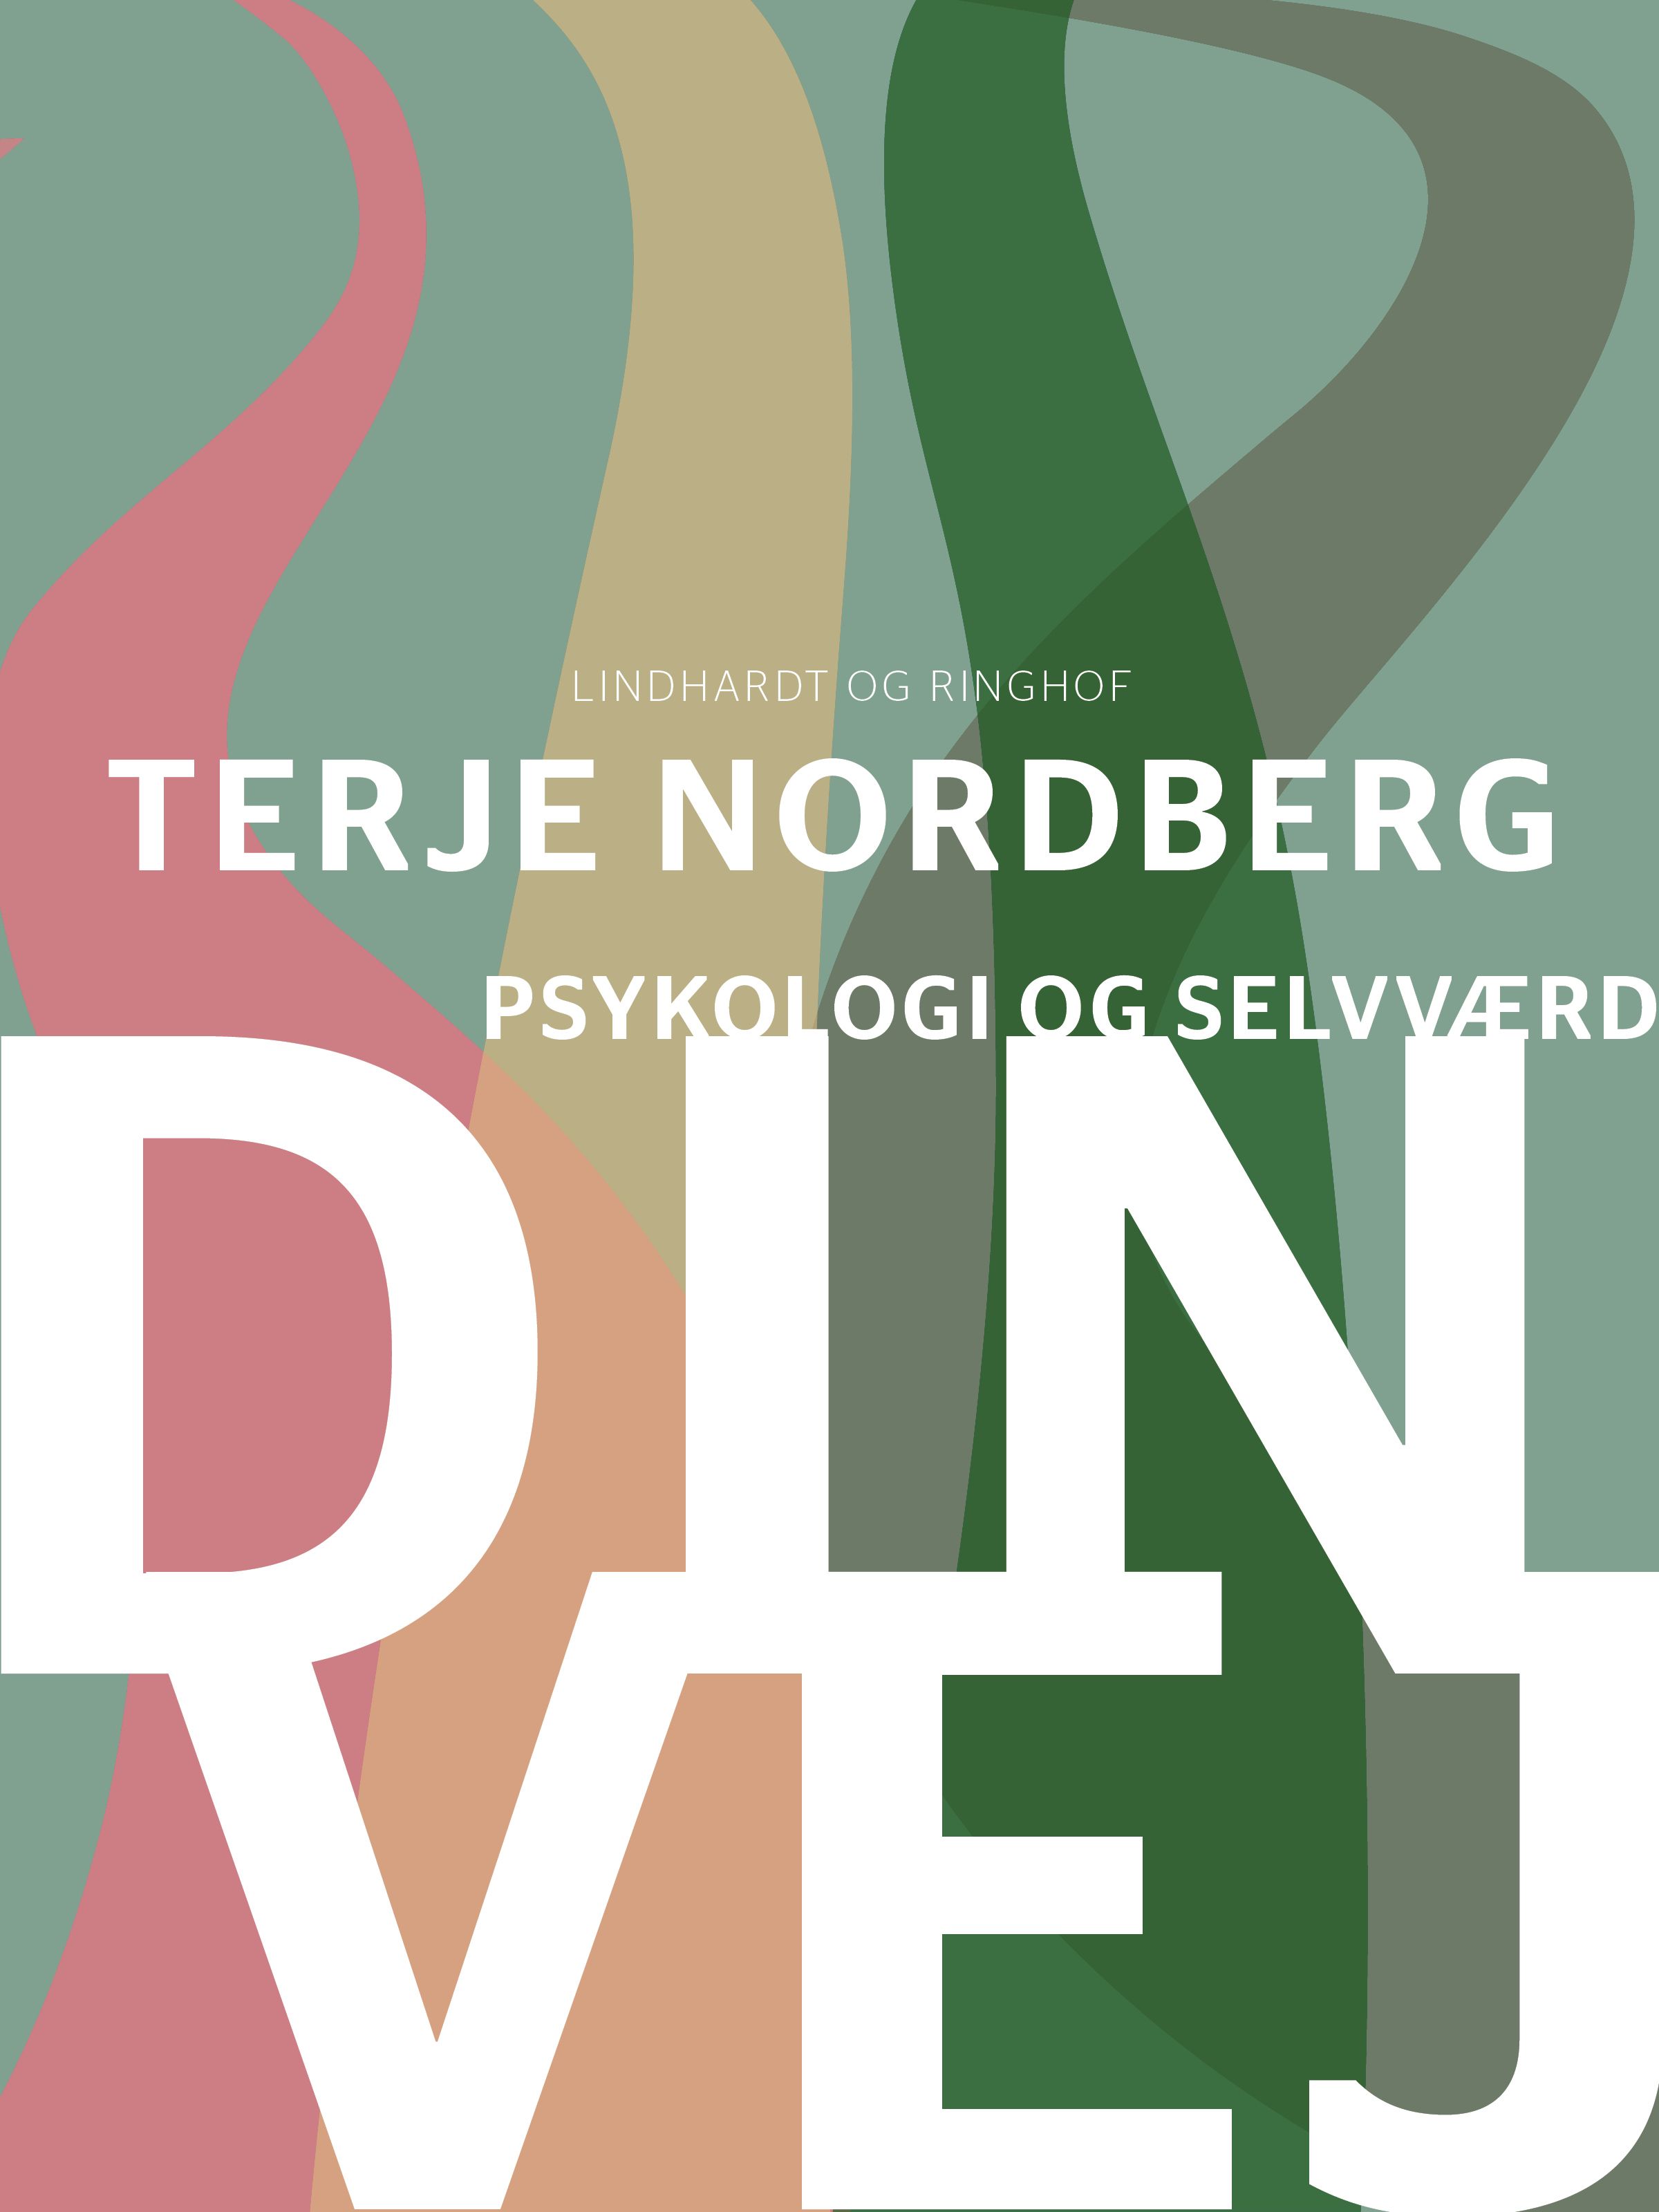 Din vej – psykologi og selvværd, eBook by Terje Nordberg